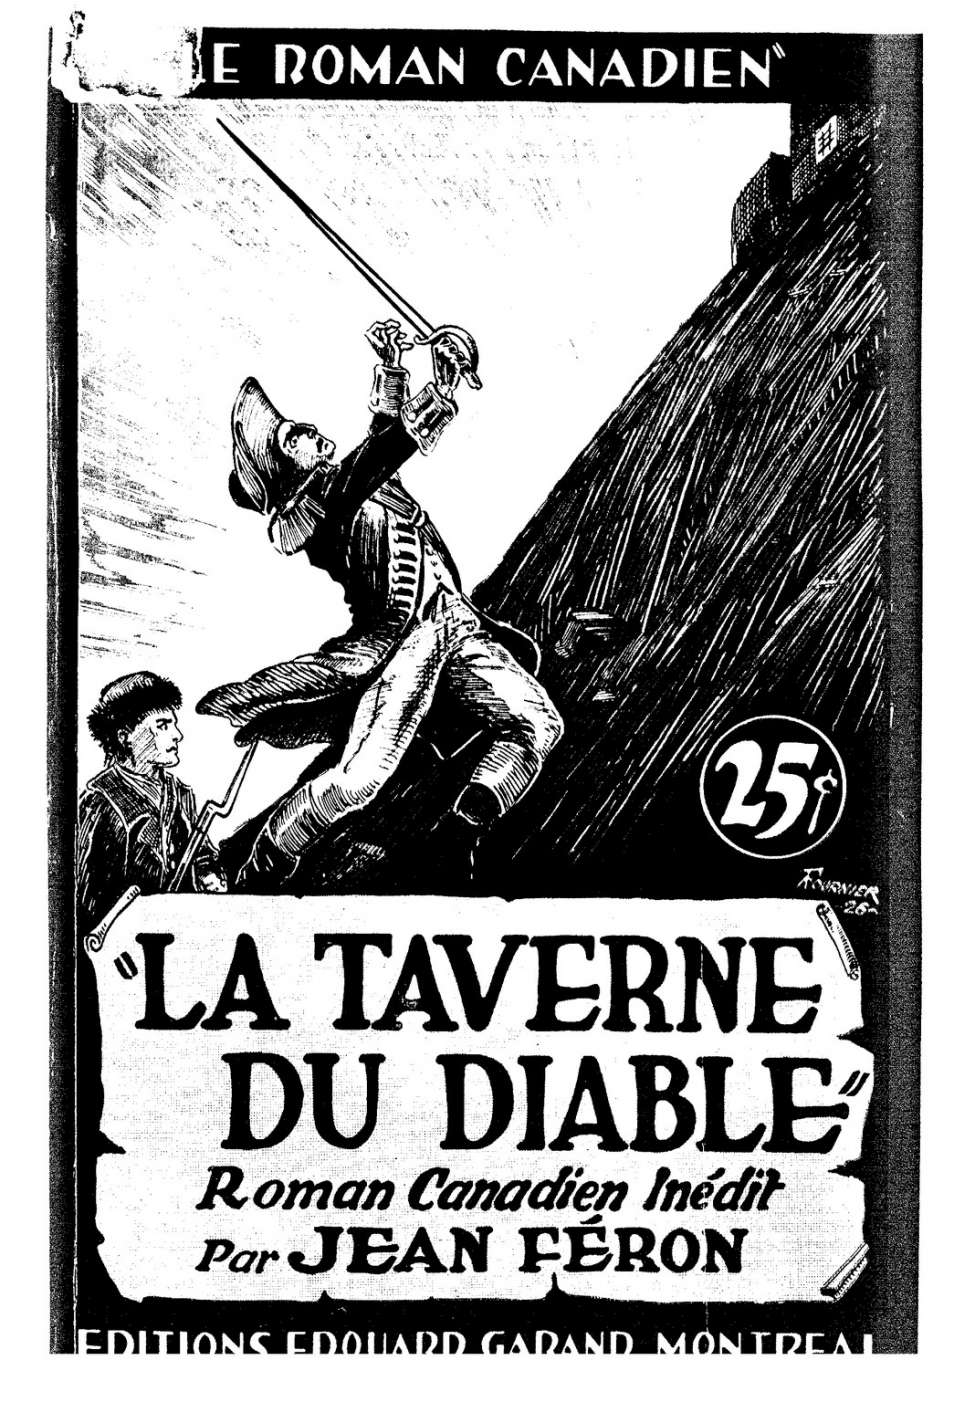 Book Cover For Le Roman Canadien 22 - La taverne du diable